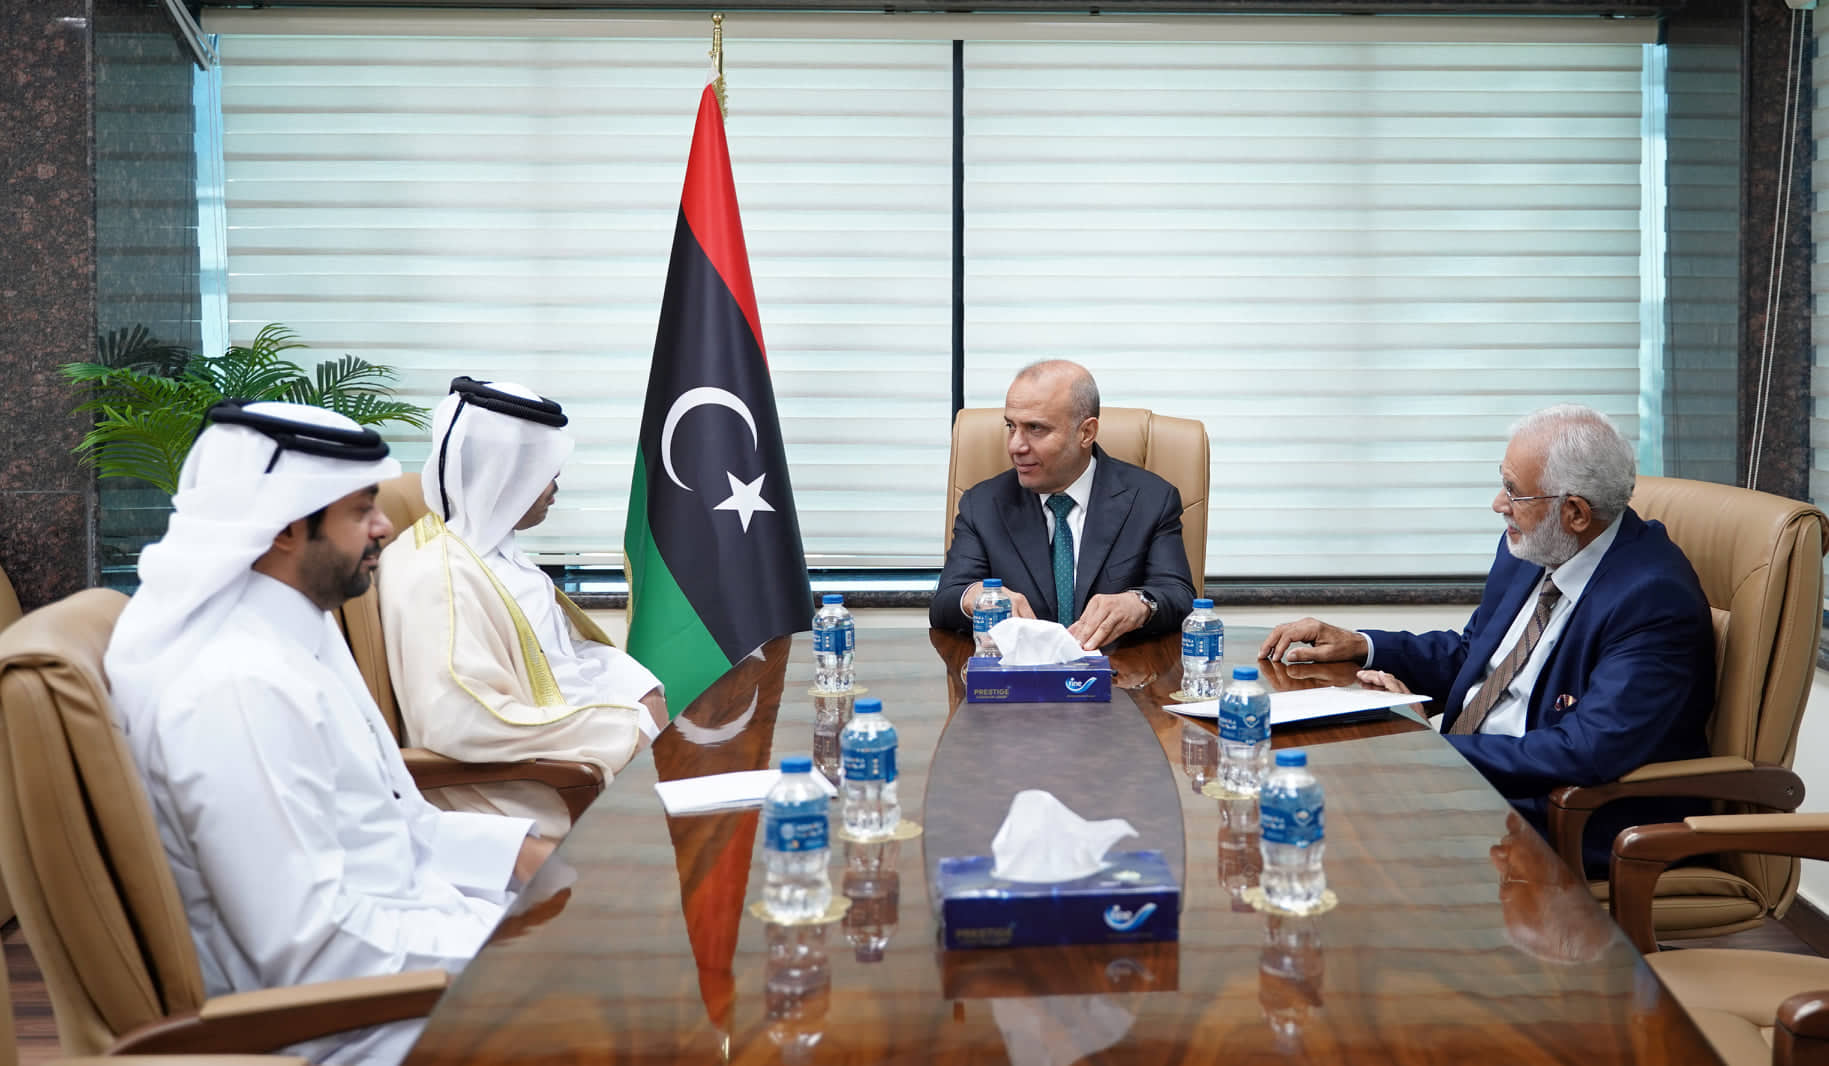 اللافي يُتابع مع السفير القطري الجهود العربية والدولية لإنهاء الأزمة السياسية وإجراء الاستحقاق الانتخابي الذي يتطلع إليه الشعب الليبي